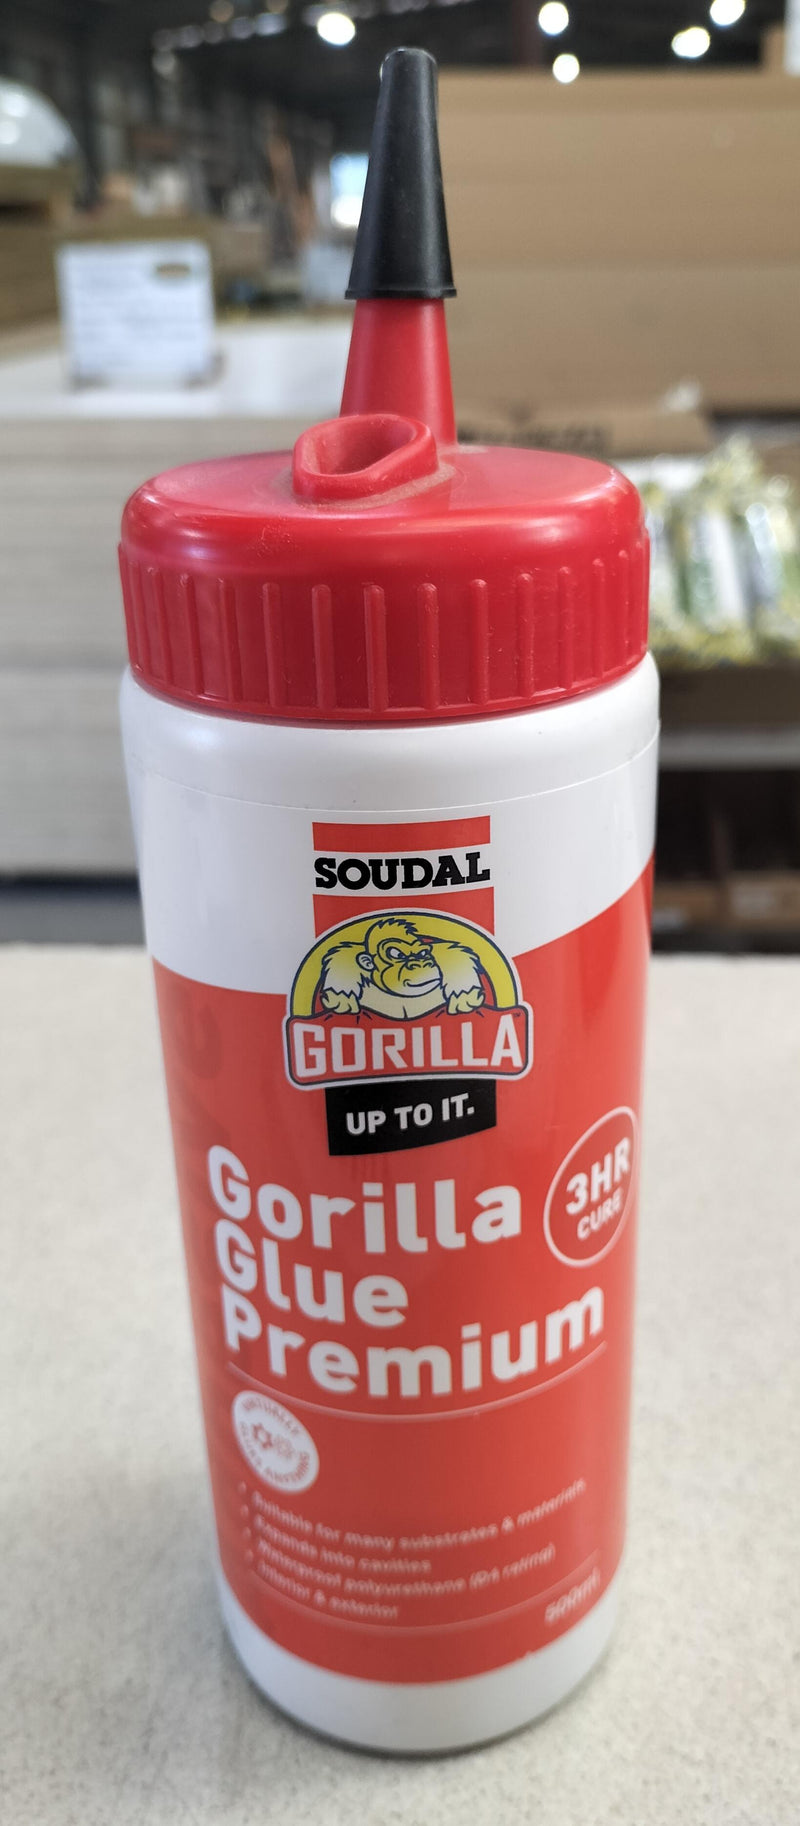 Gorilla Glue Premium 3 Hour Cure 500ml